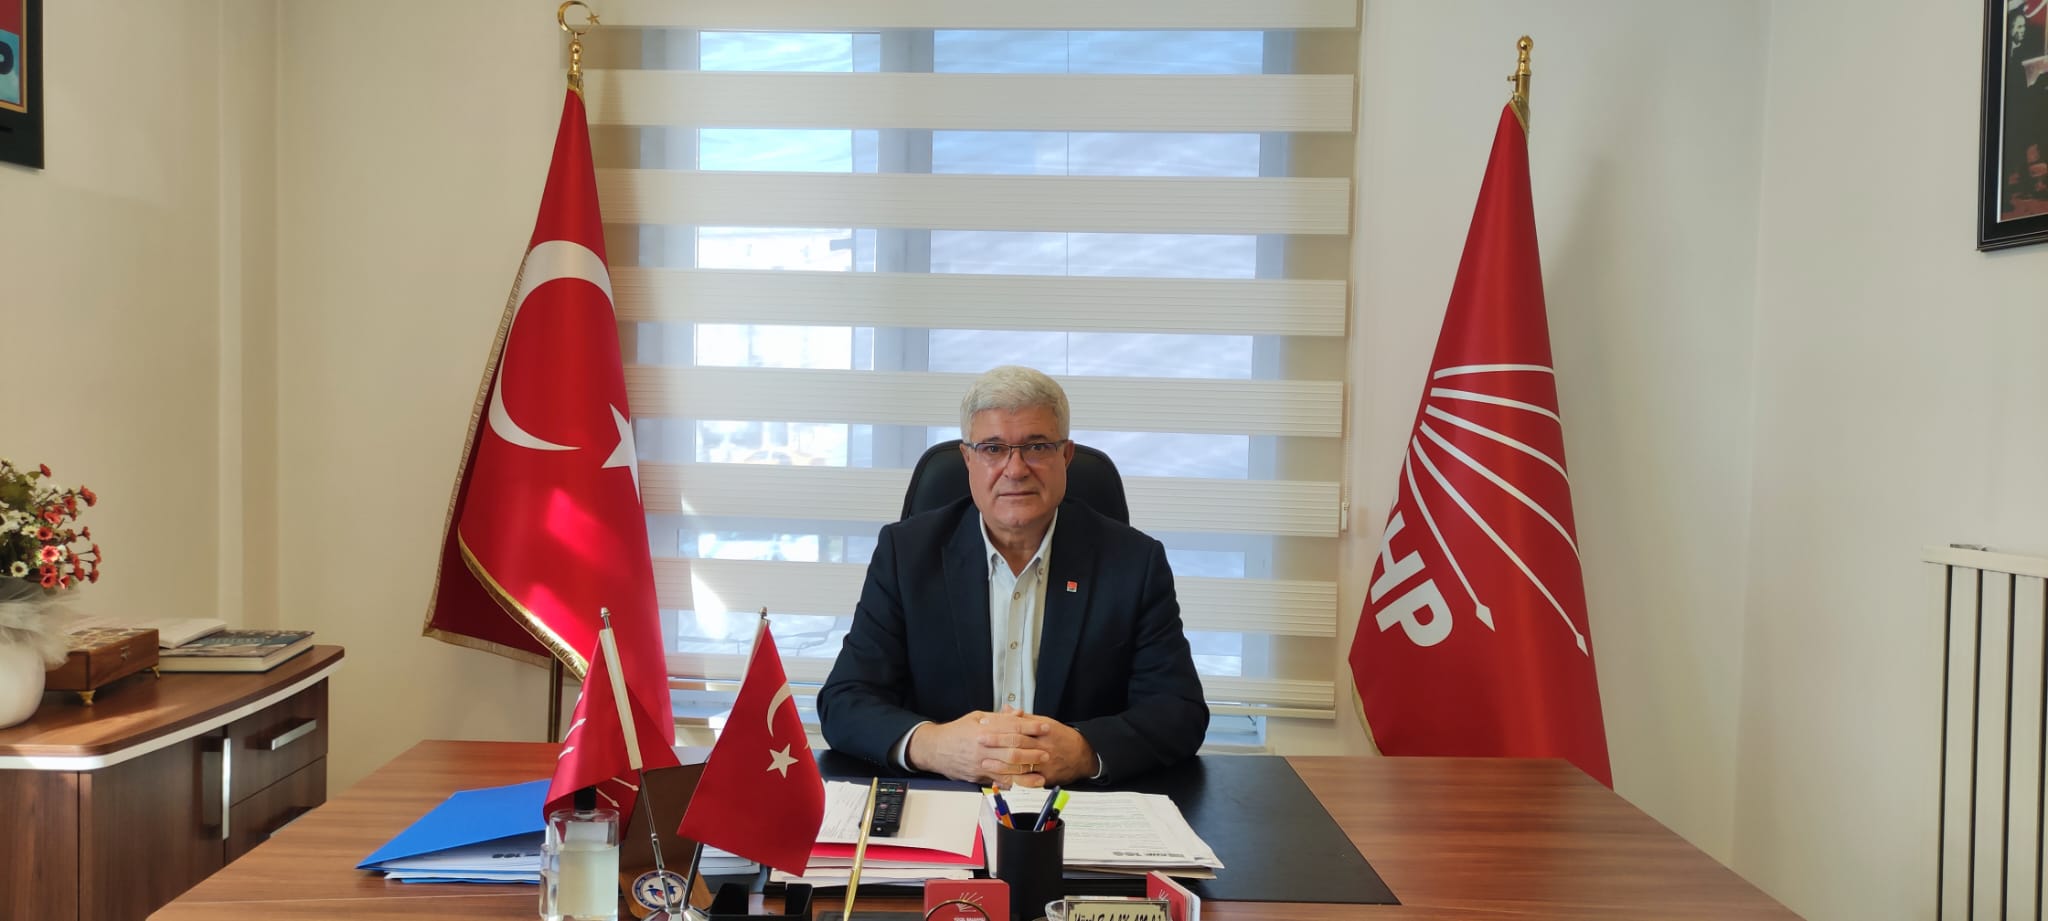 Balkanlı: “DSİ Genel Müdürü’nün açıklamaları gerçeği yansıtmıyor”